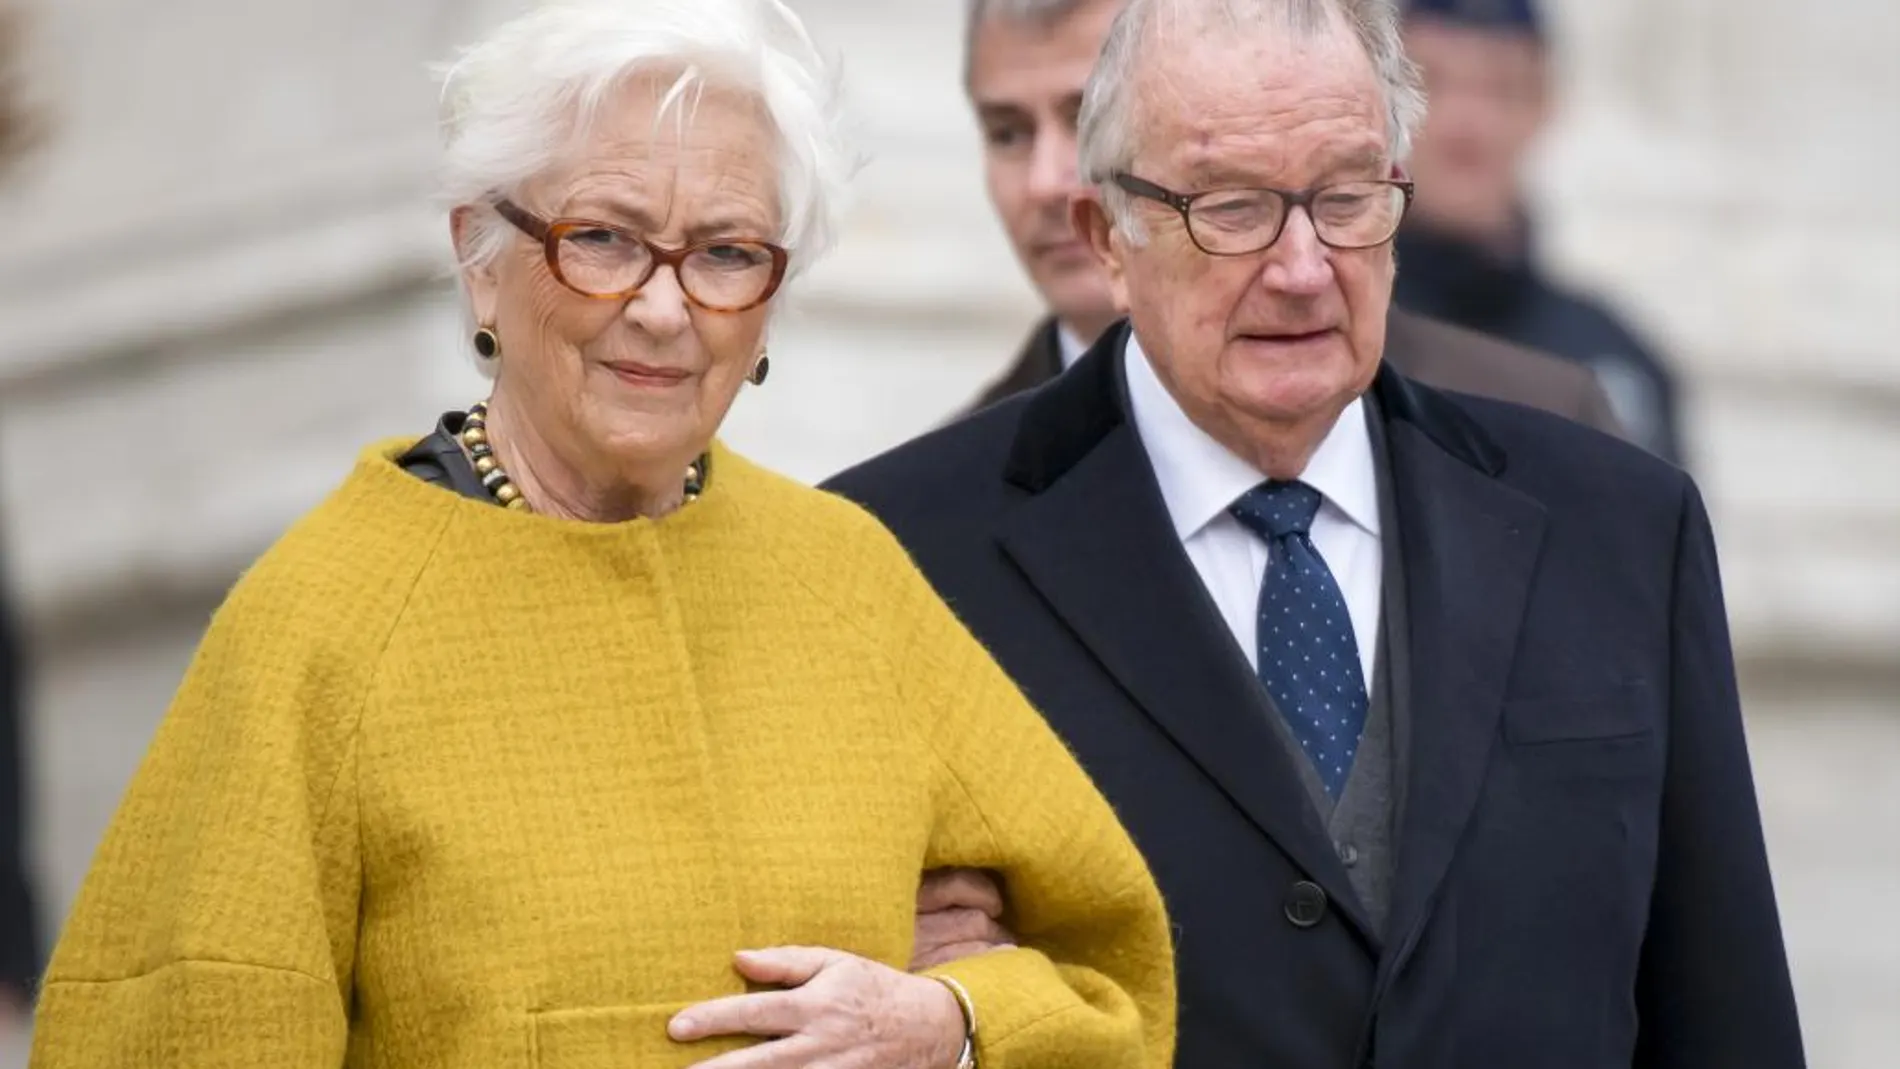 Paola fue reina consorte de los belgas por su matrimonio con el rey Alberto II, quien abdicó en su hijo Felipe en julio de 2013